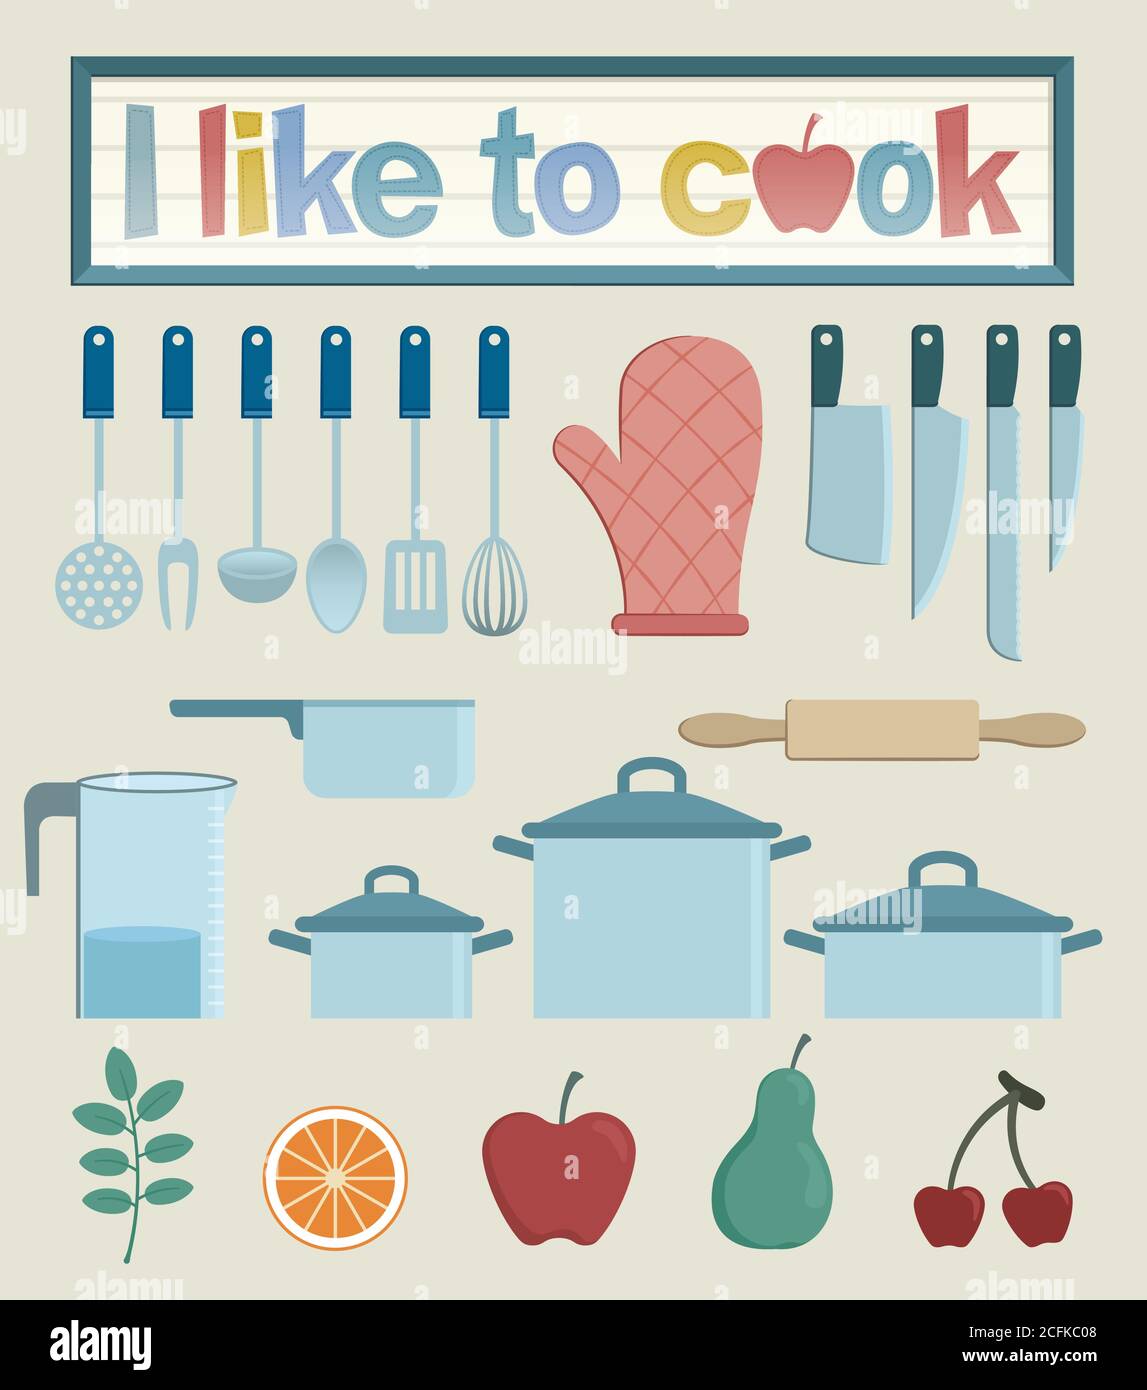 https://c8.alamy.com/compes/2cfkc08/juego-con-varias-ilustraciones-de-utensilios-de-cocina-cazuelas-cuchillos-un-rodillo-y-un-guante-de-cocina-todo-lo-que-necesitas-si-te-gusta-cocinar-2cfkc08.jpg